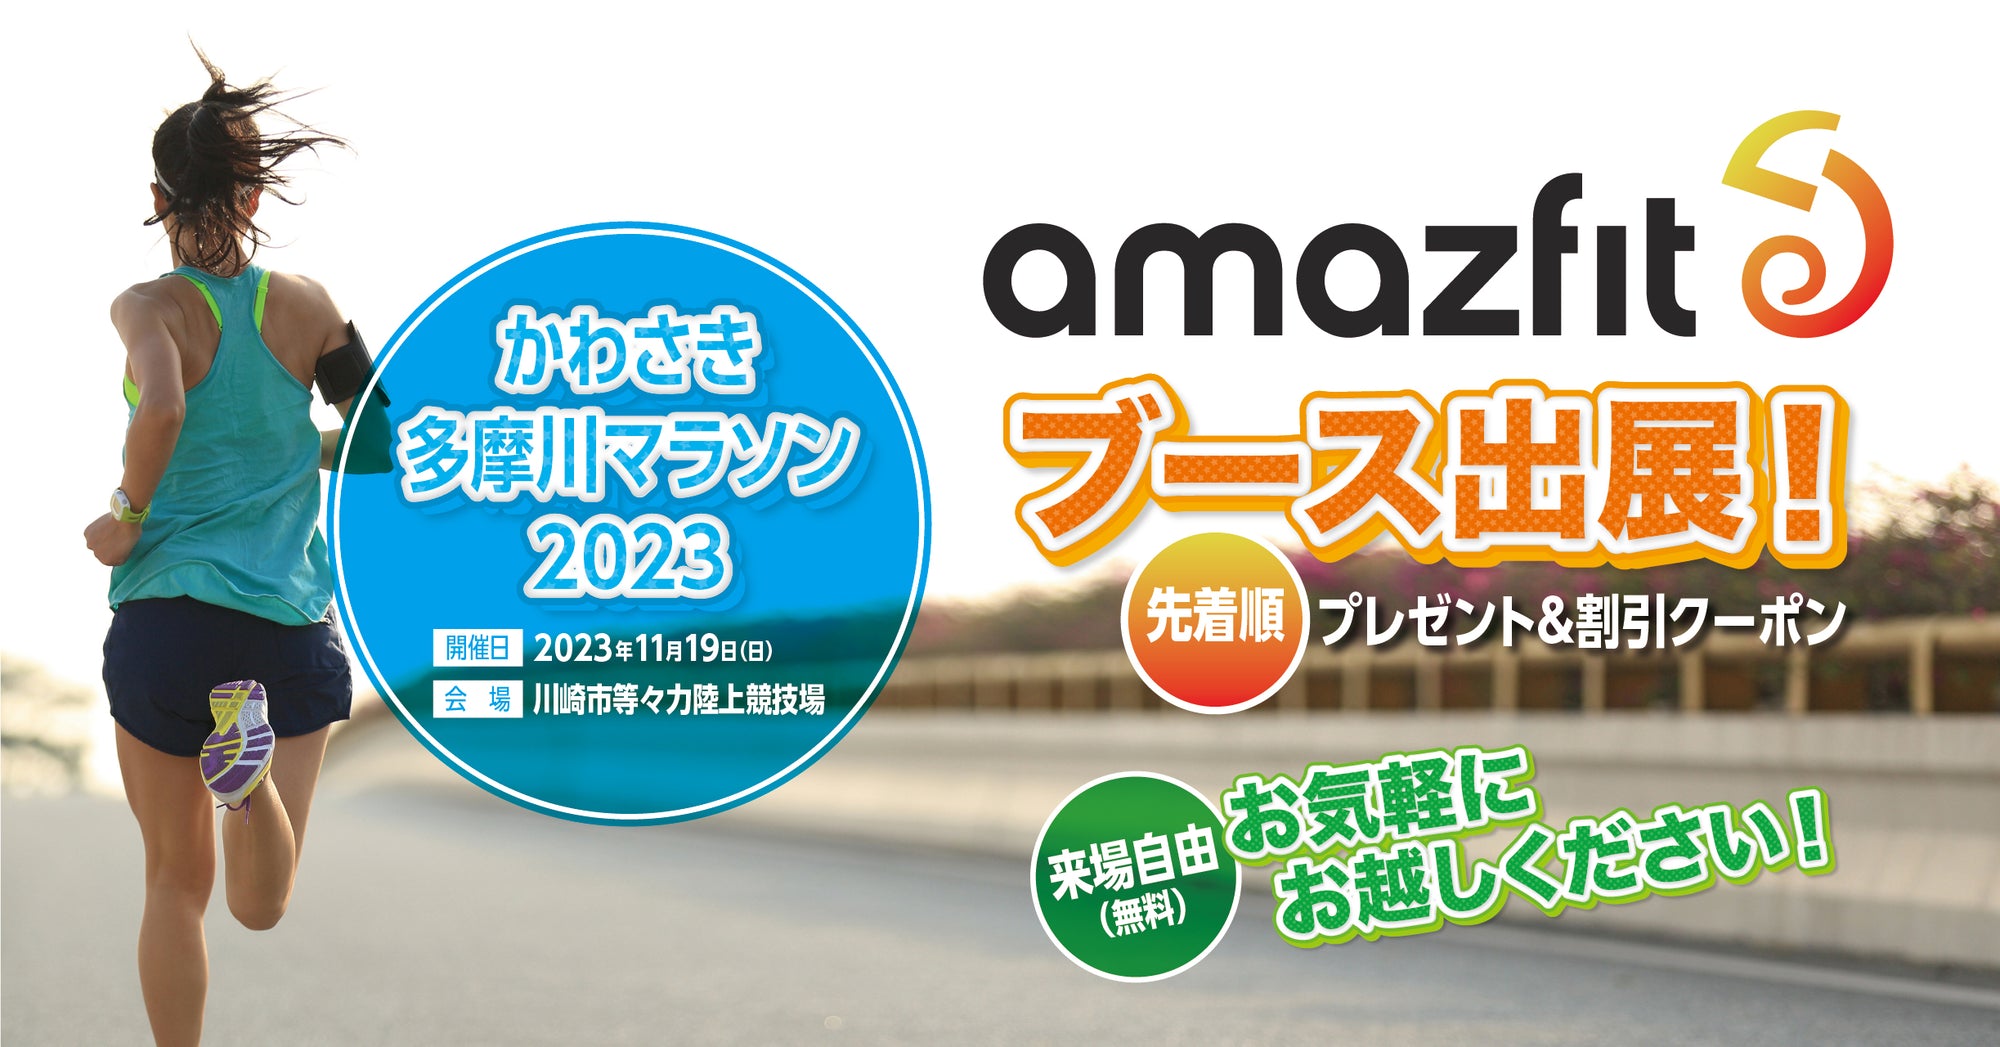 Amazfitはかわさき多摩川マラソン2023に協賛いたします